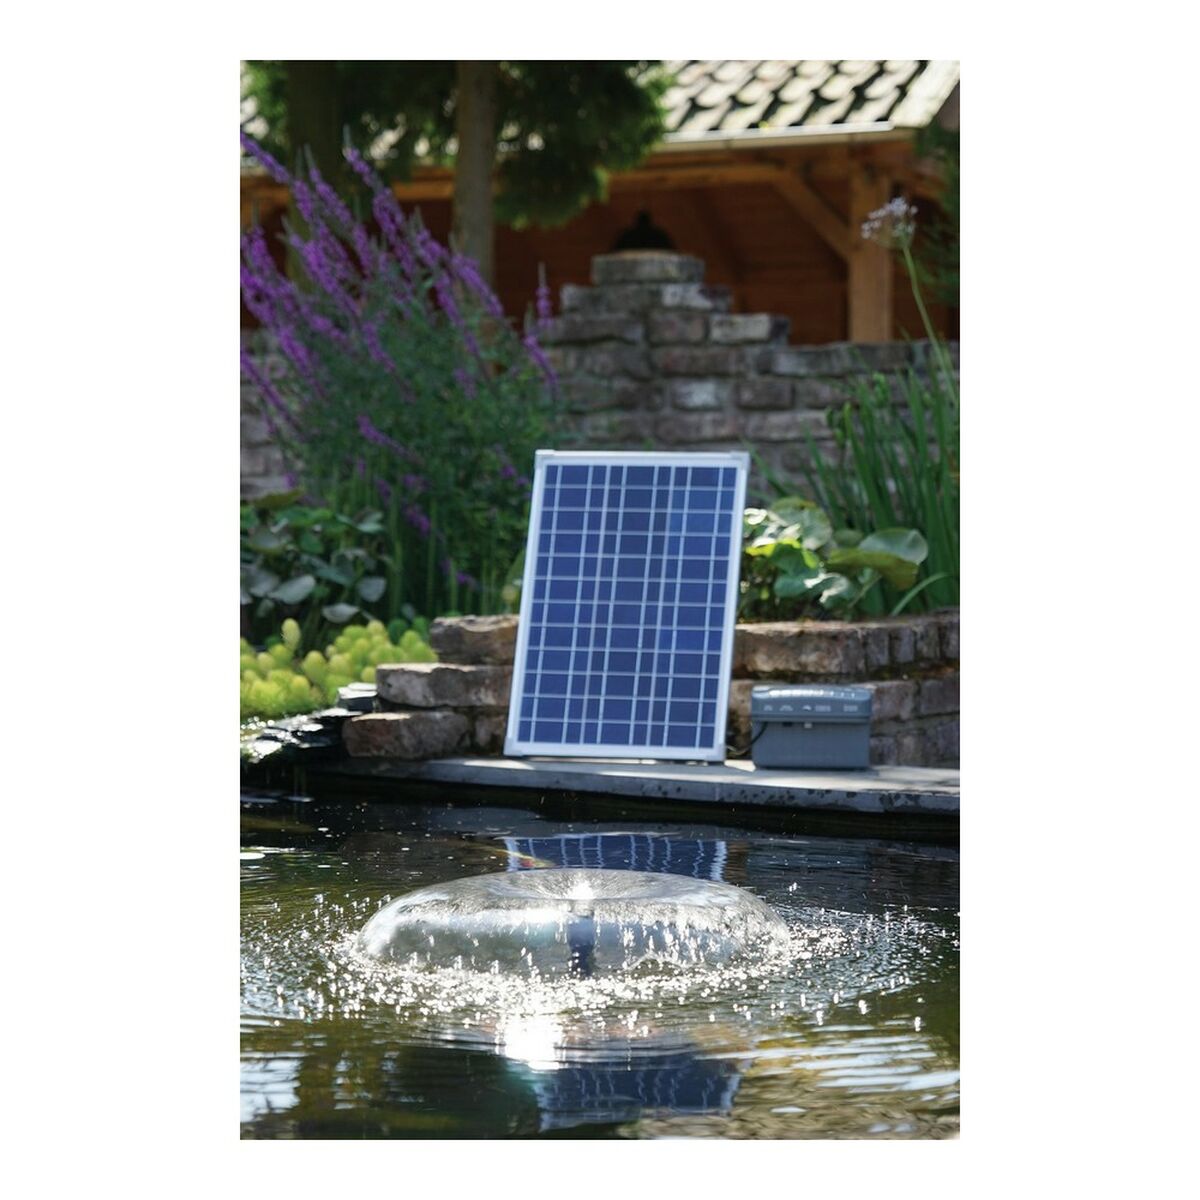 Ūdens pumpis Ubbink SolarMax 1000 Fotoelektriskais saules panelis